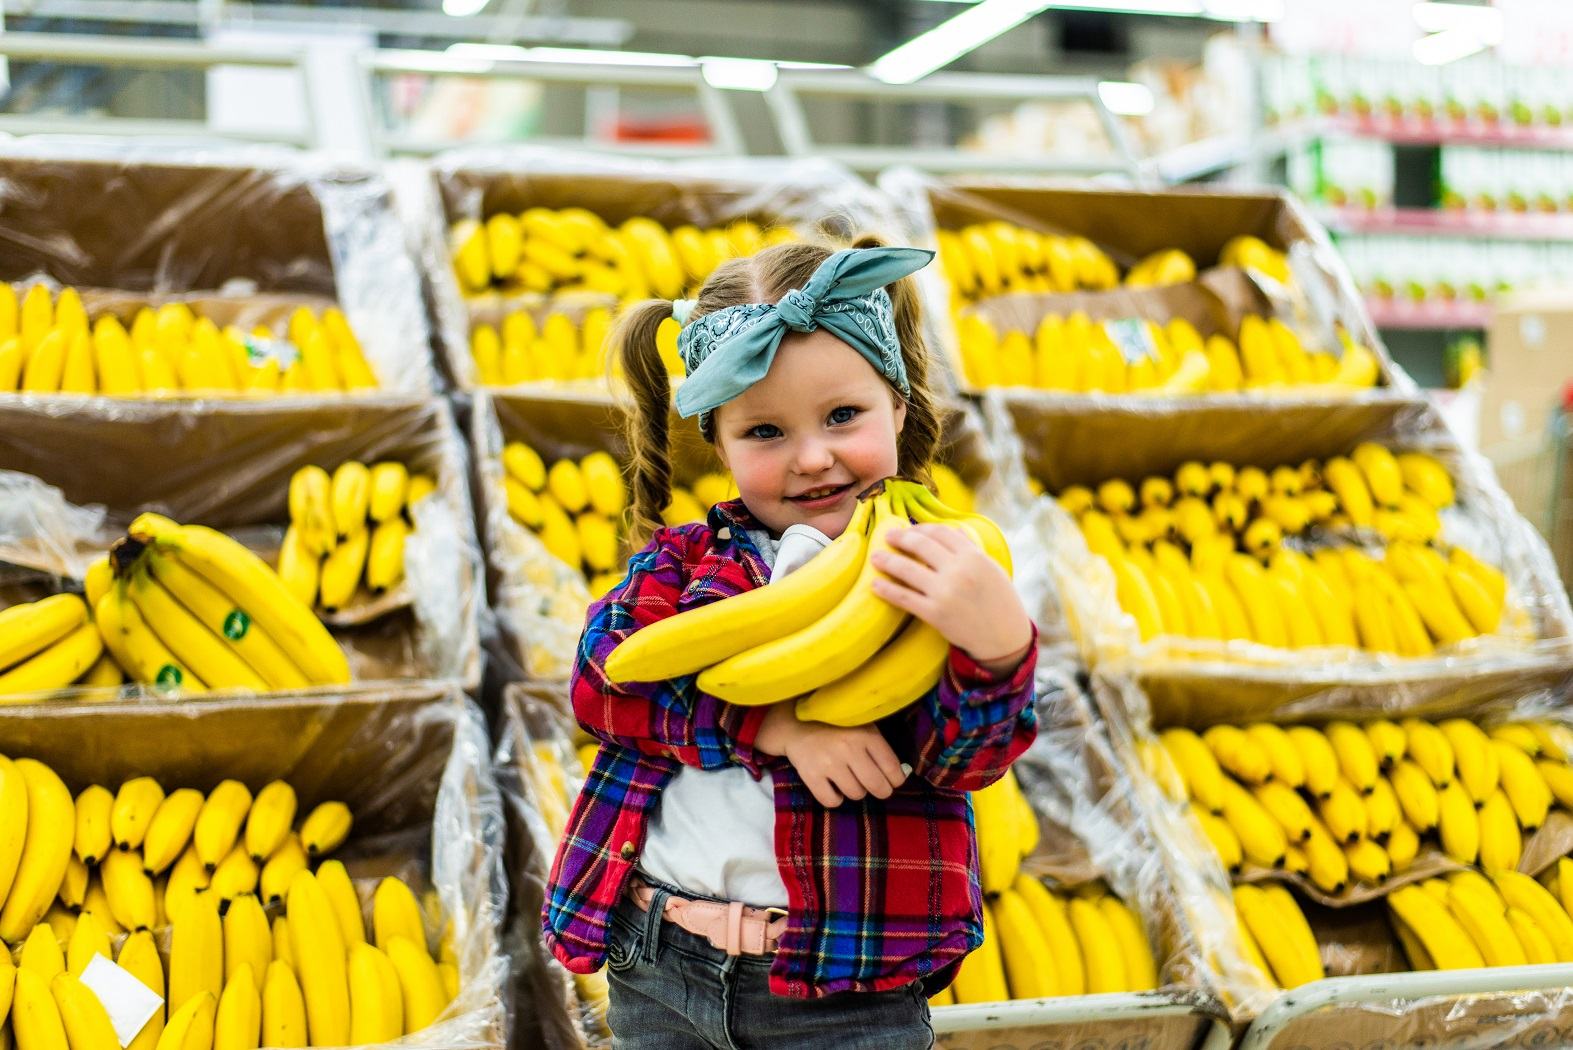 O banana pe zi ajuta copilul sa invete mult mai repede. Alimente care stimuleaza memoria copilului